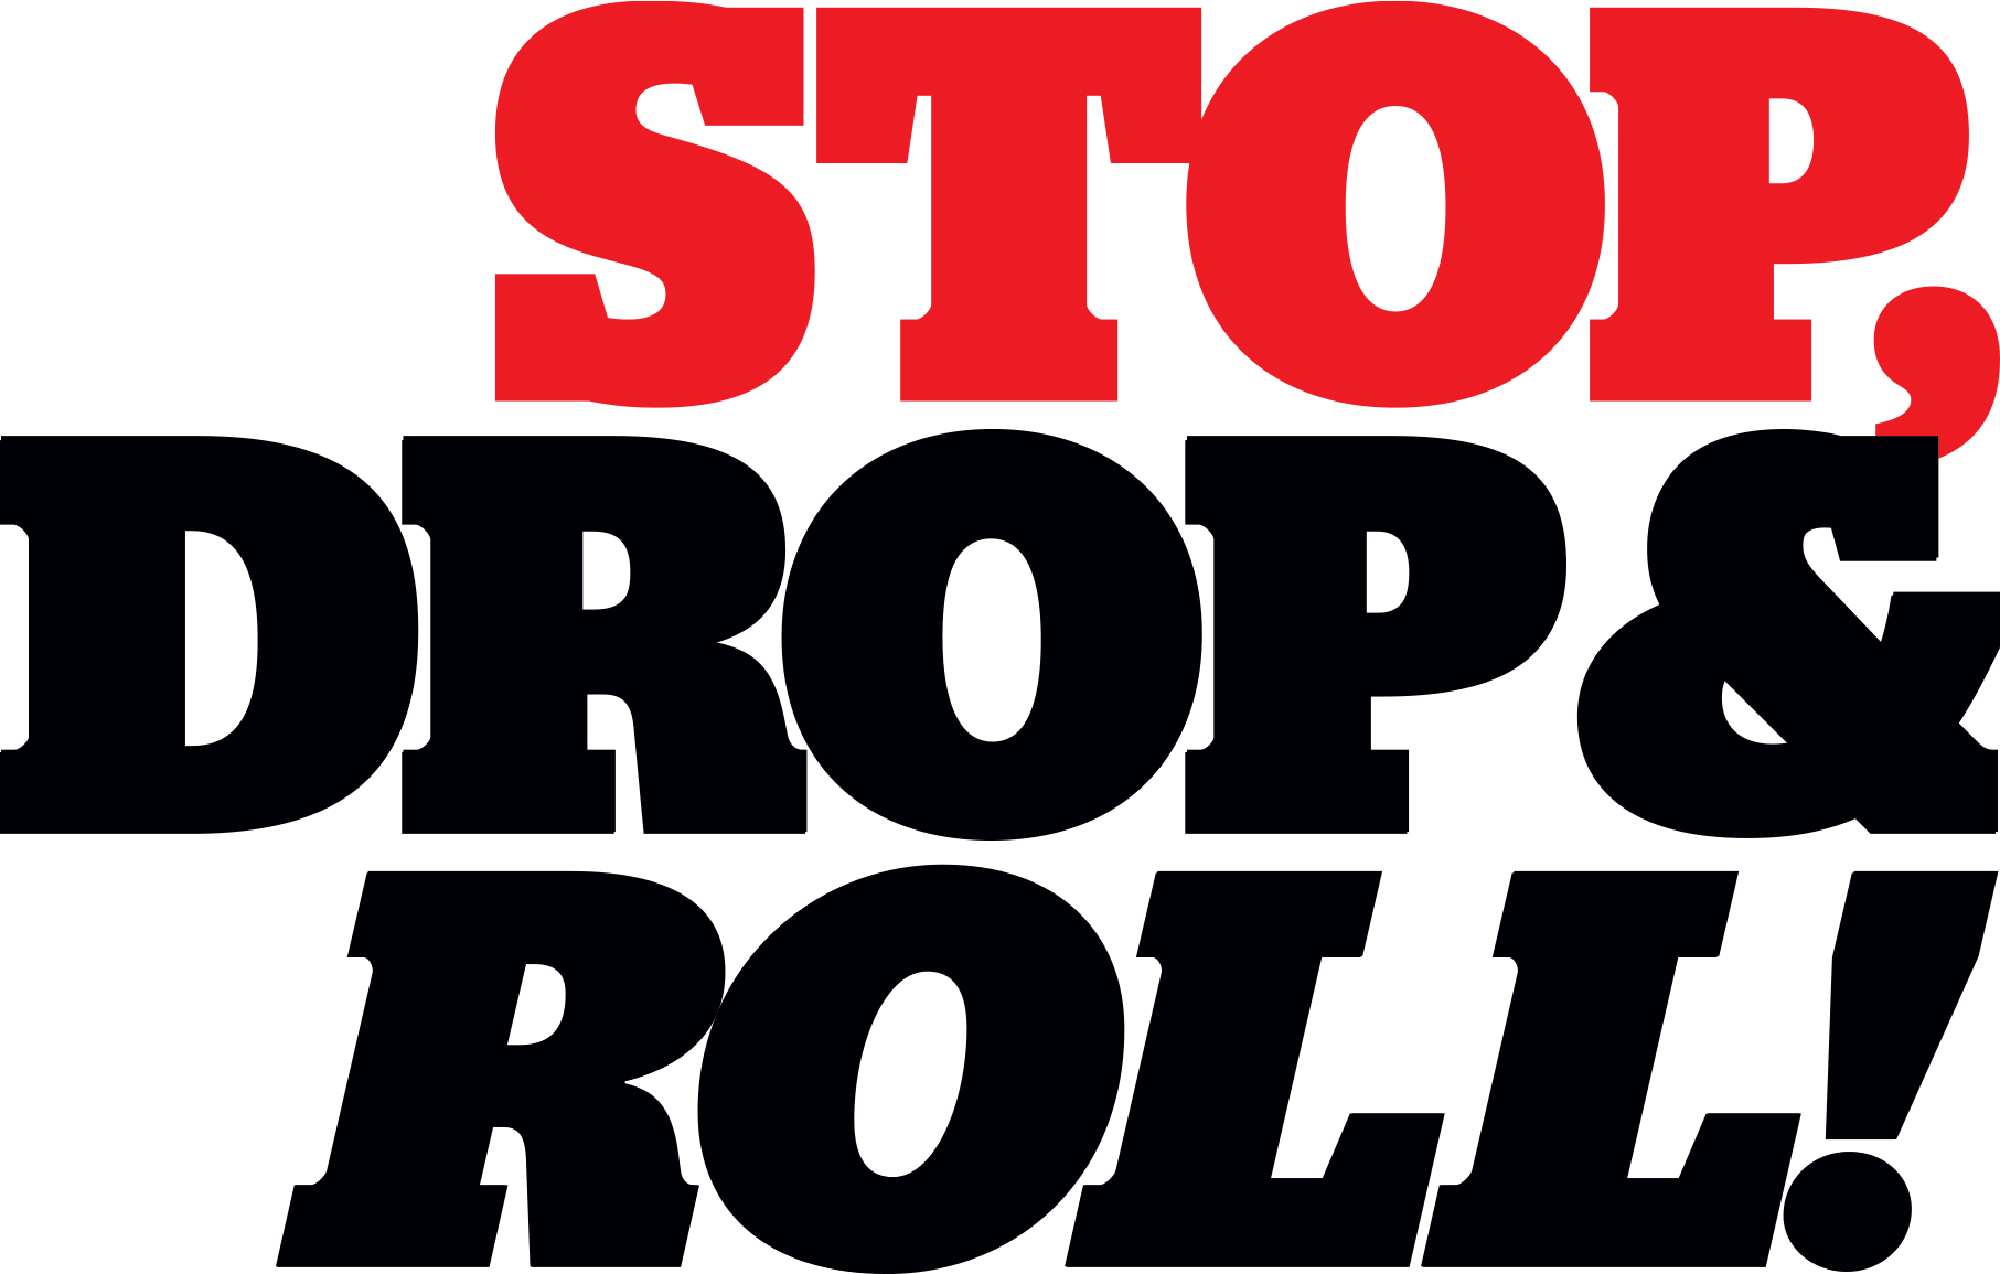 Stop, Drop & Roll!